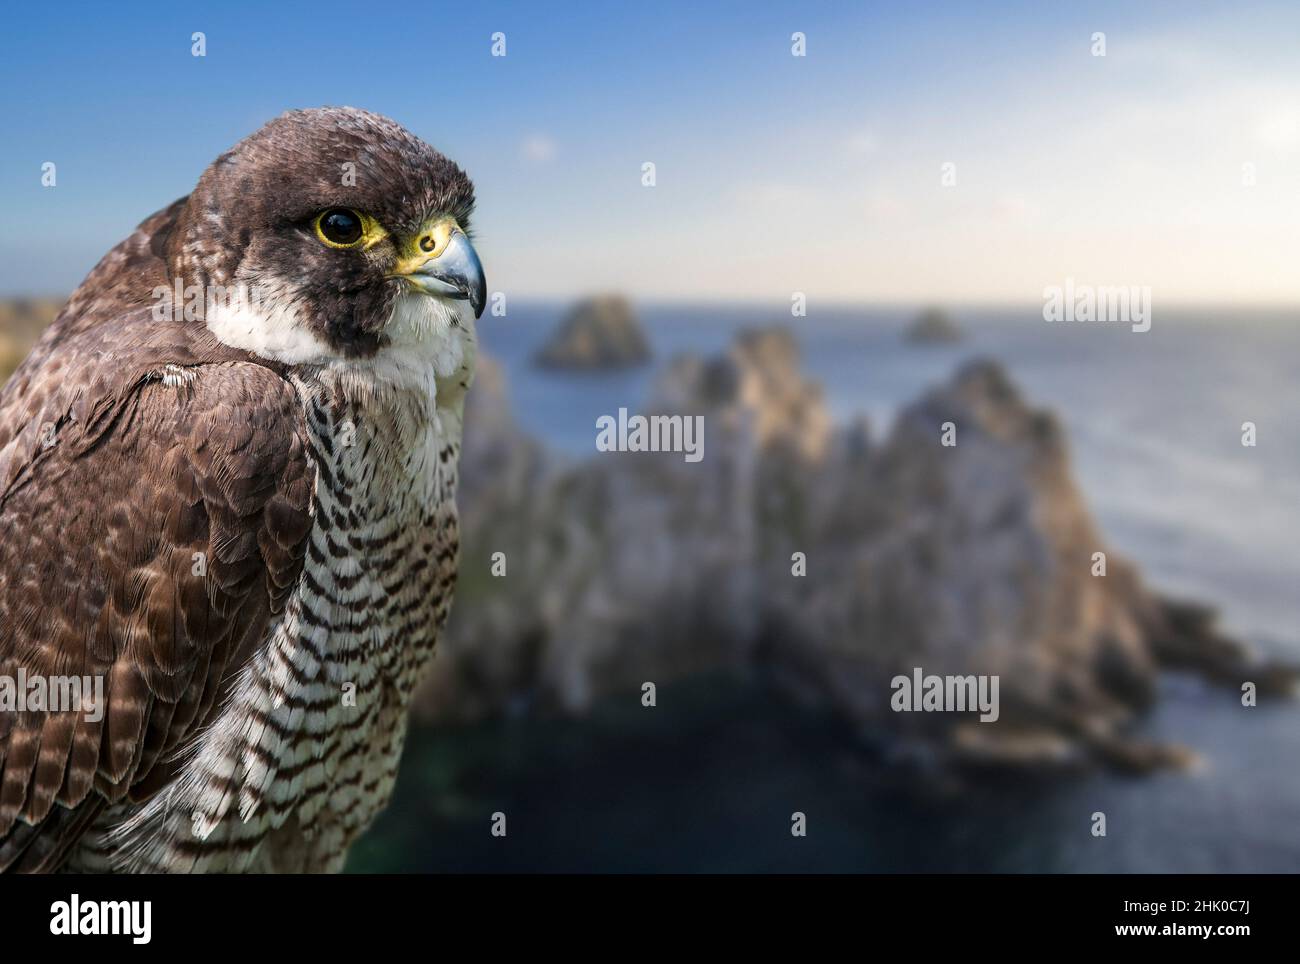 faucon pèlerin (Falco peregrinus) gros plan de la femelle perchée sur la falaise maritime.Composite numérique Banque D'Images